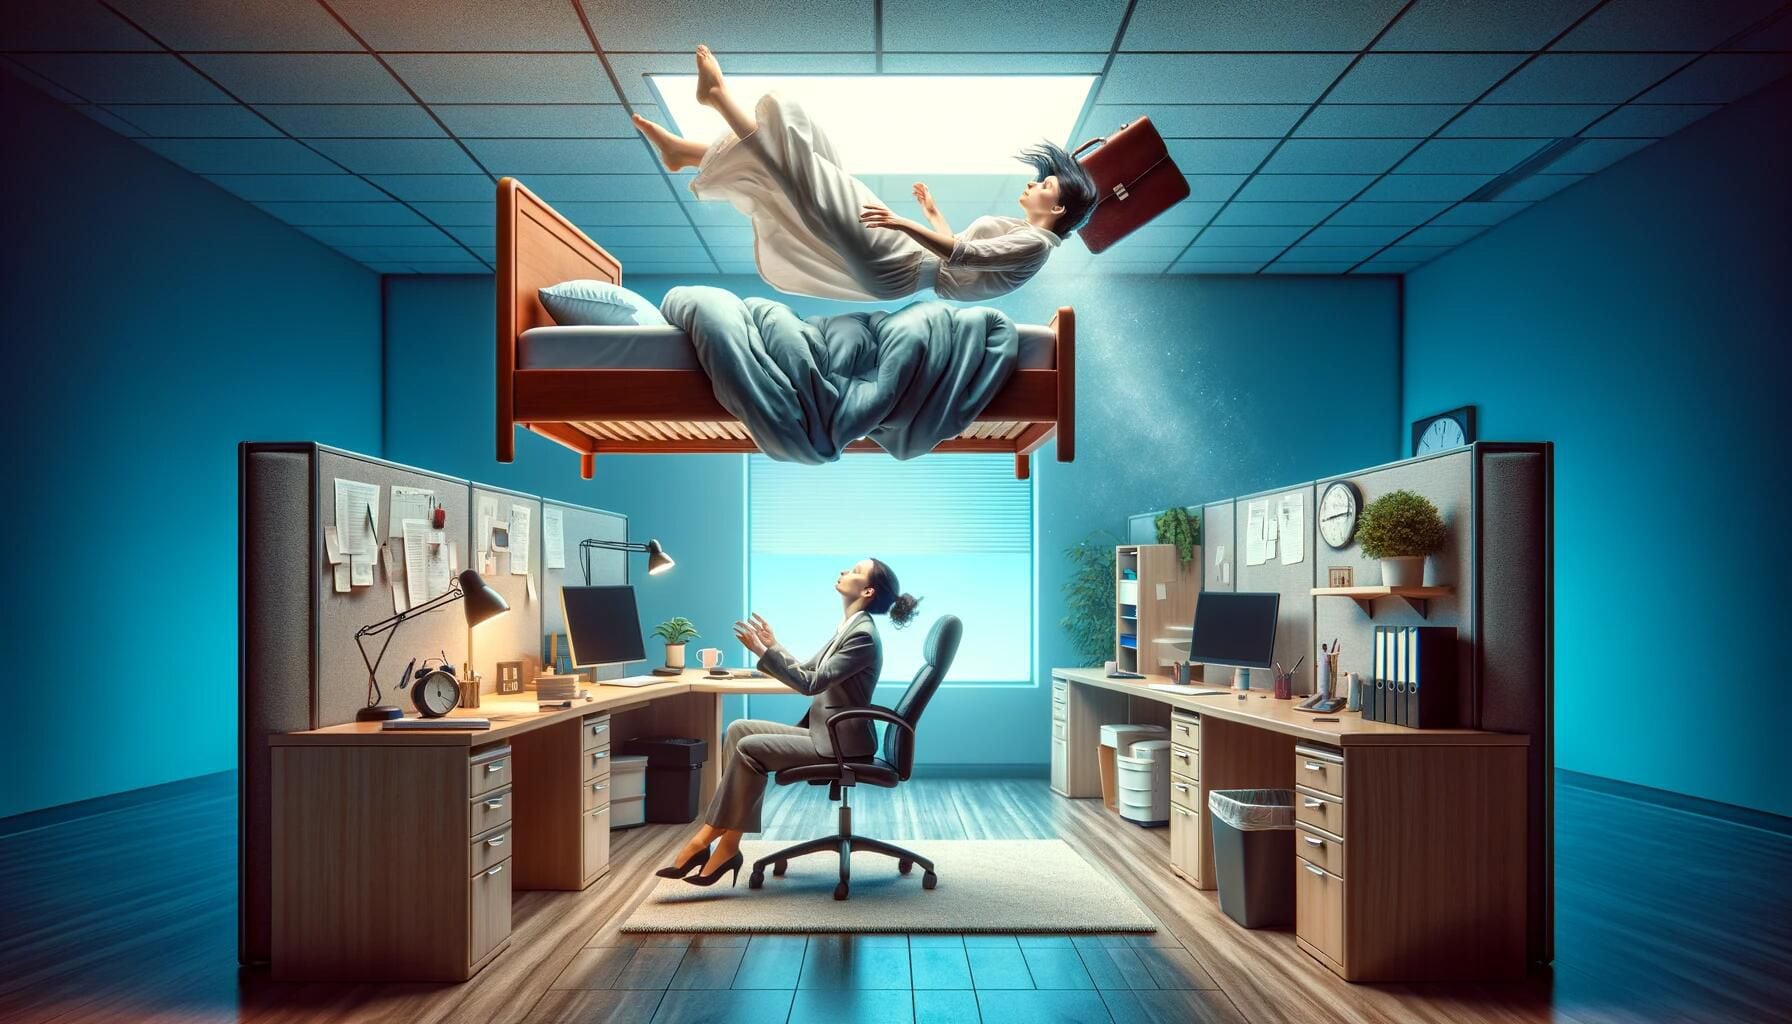 Representación visual de una mujer cayendo con una cama dentro de una oficina, simbolizando el despertar con cansancio. Una expresión gráfica del agotamiento y la falta de sueño en el contexto laboral. (Imagen ilustrativa Infobae)